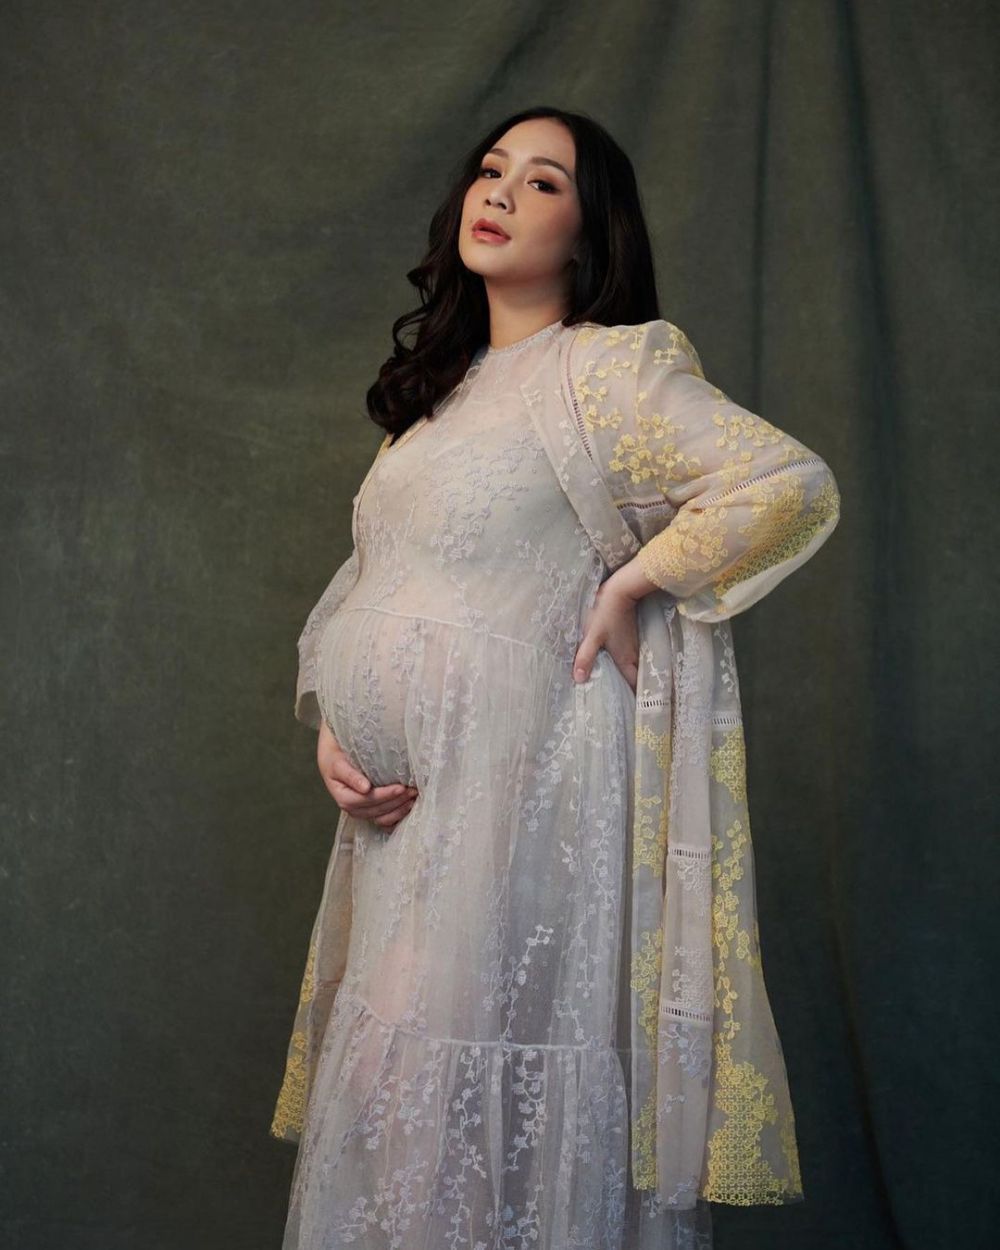 9 Perjalanan kehamilan kedua Nagita Slavina, jadi gampang nangis